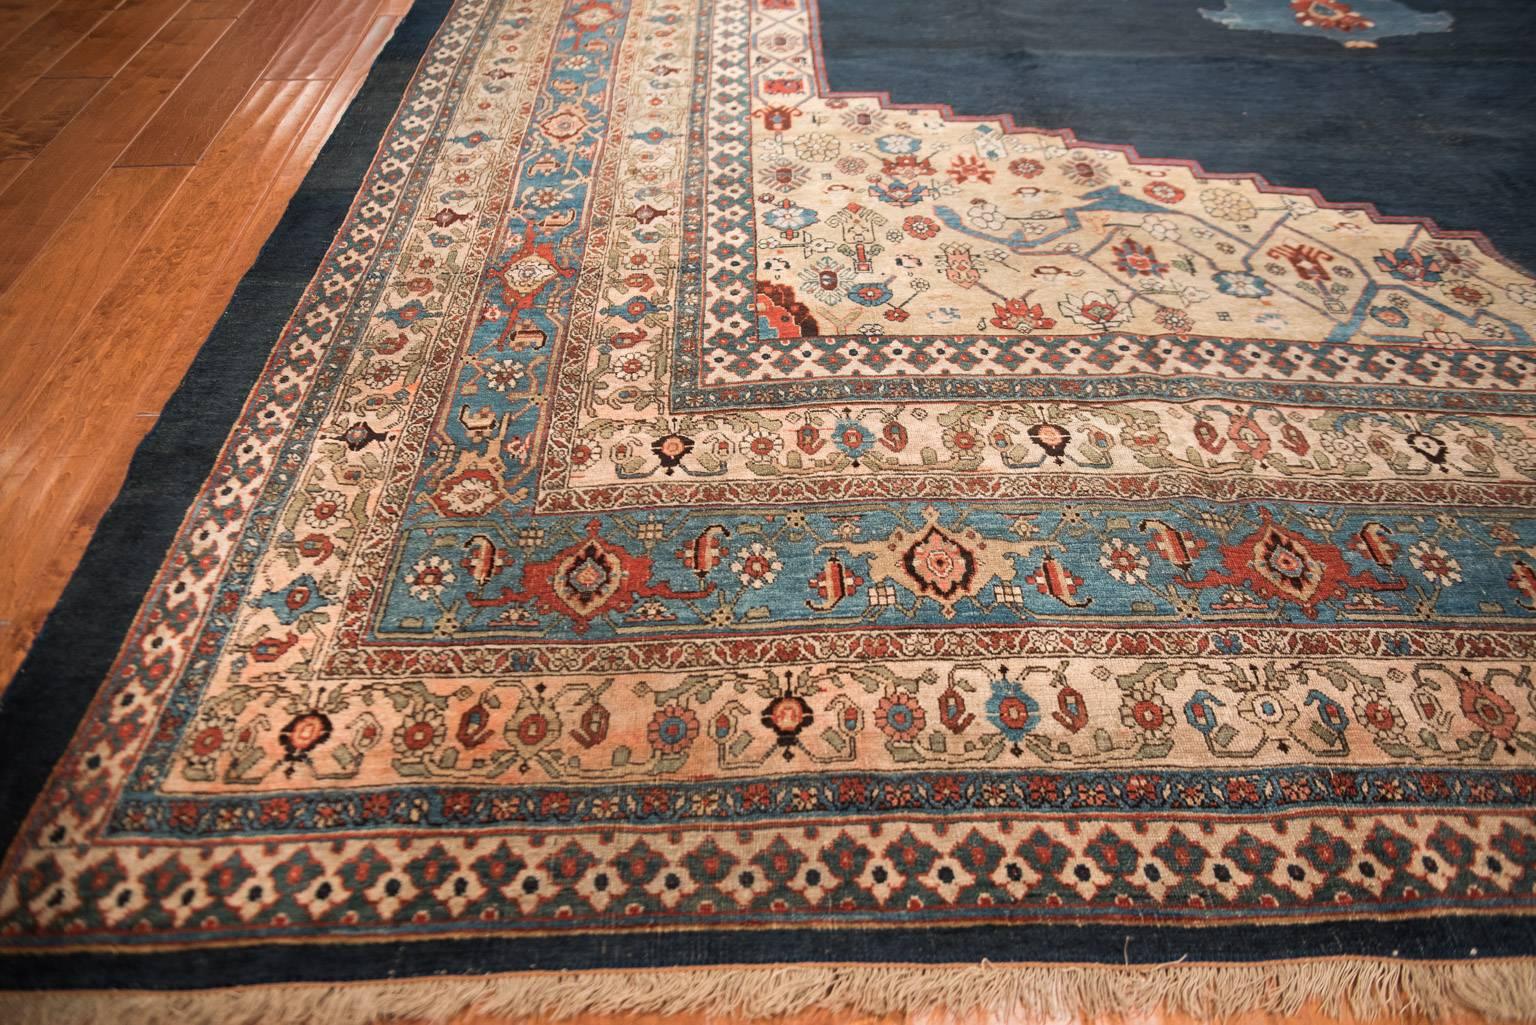 19th Century Big Blue Antique Bidjar Carpet